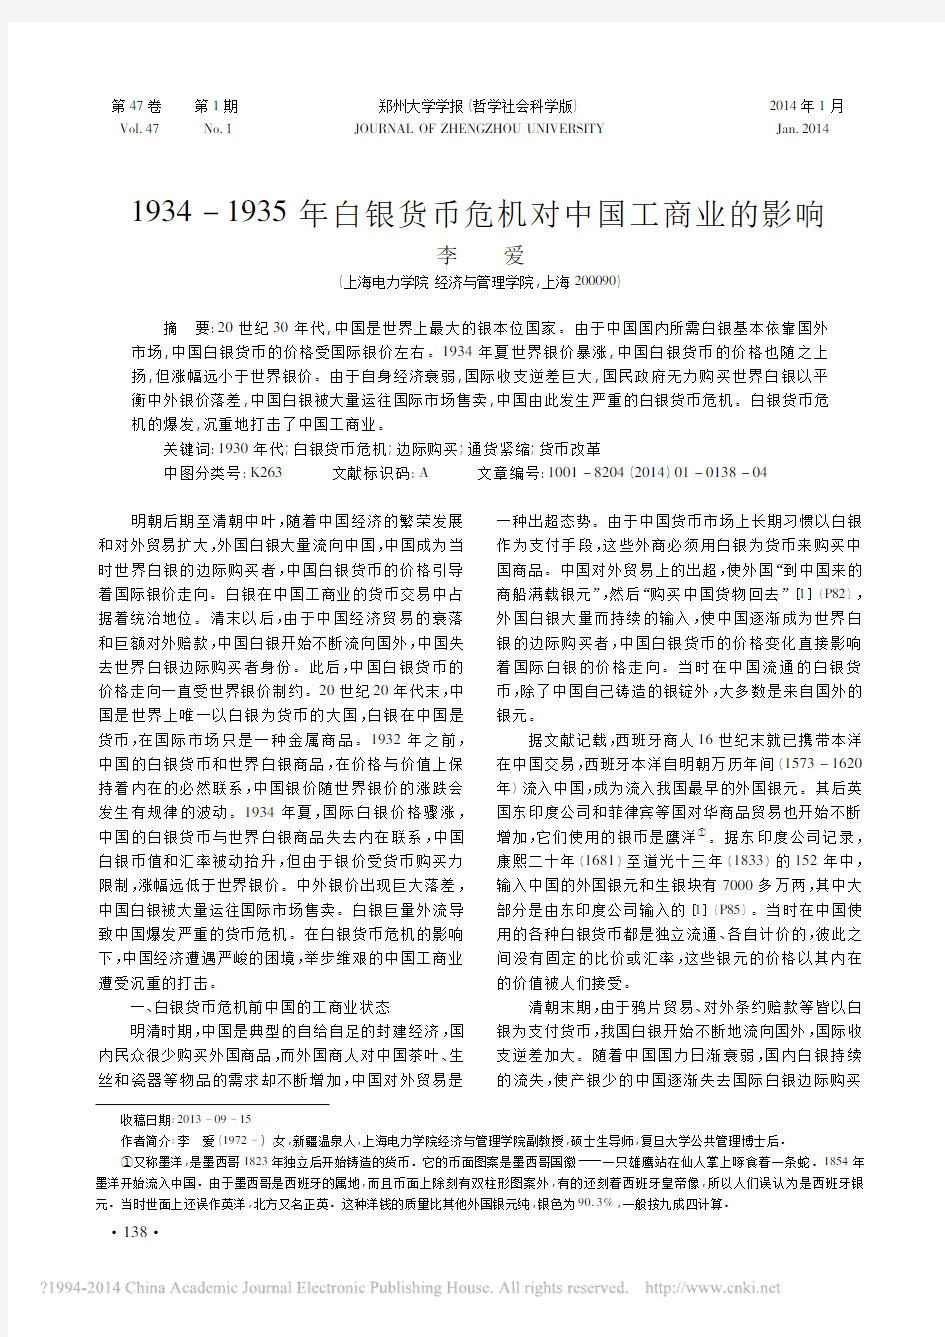 1934_1935年白银货币危机对中国工商业的影响_李爱